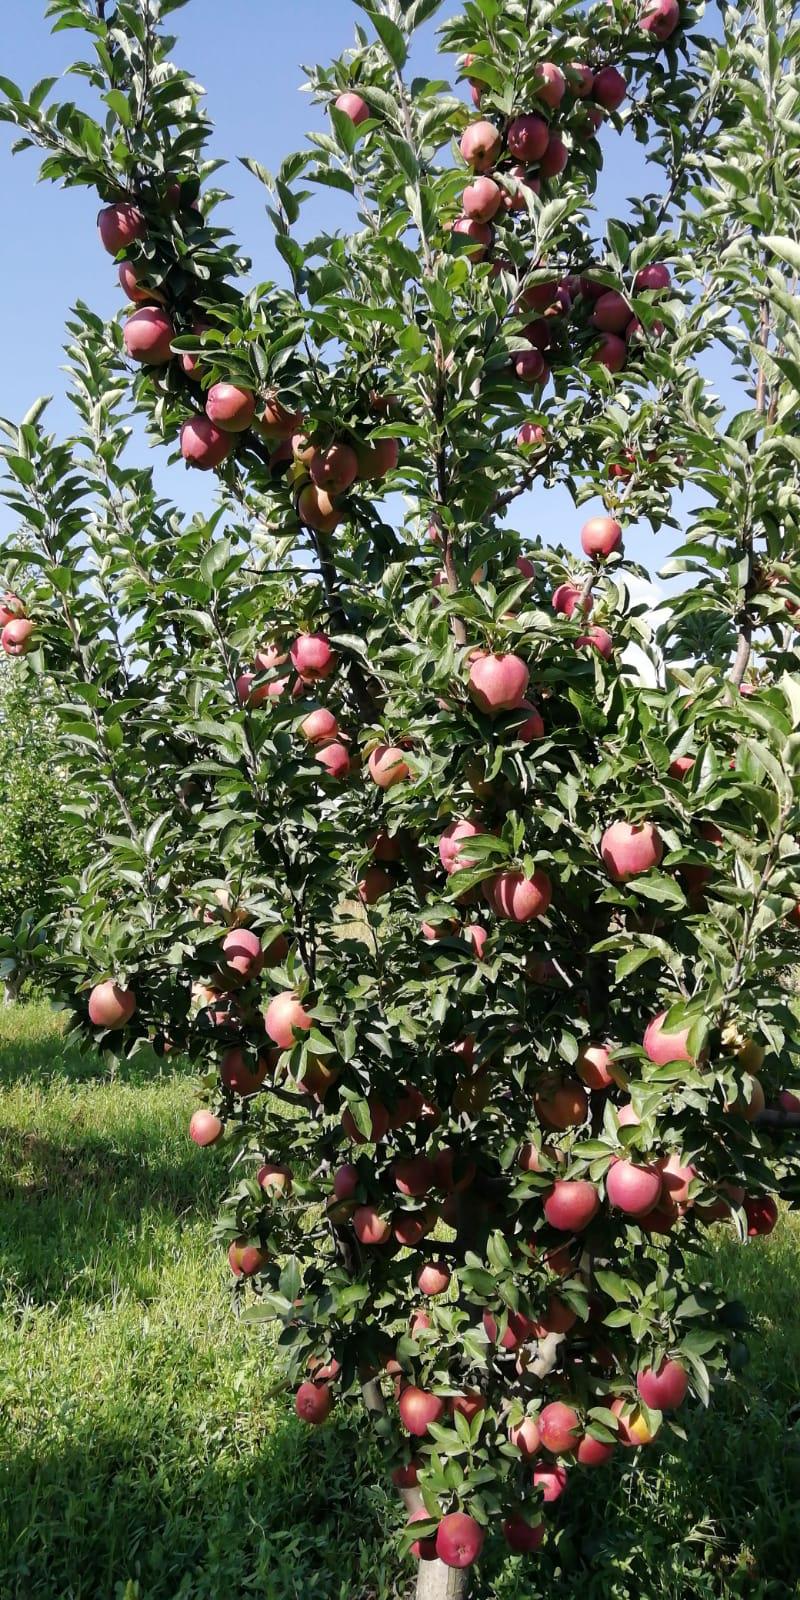 Elma - Ali Tunc tarafından verilen satılık elma ilanını ve diğer satılık elma ilanlarını tarimziraat.com adresinde bulabilirsiniz